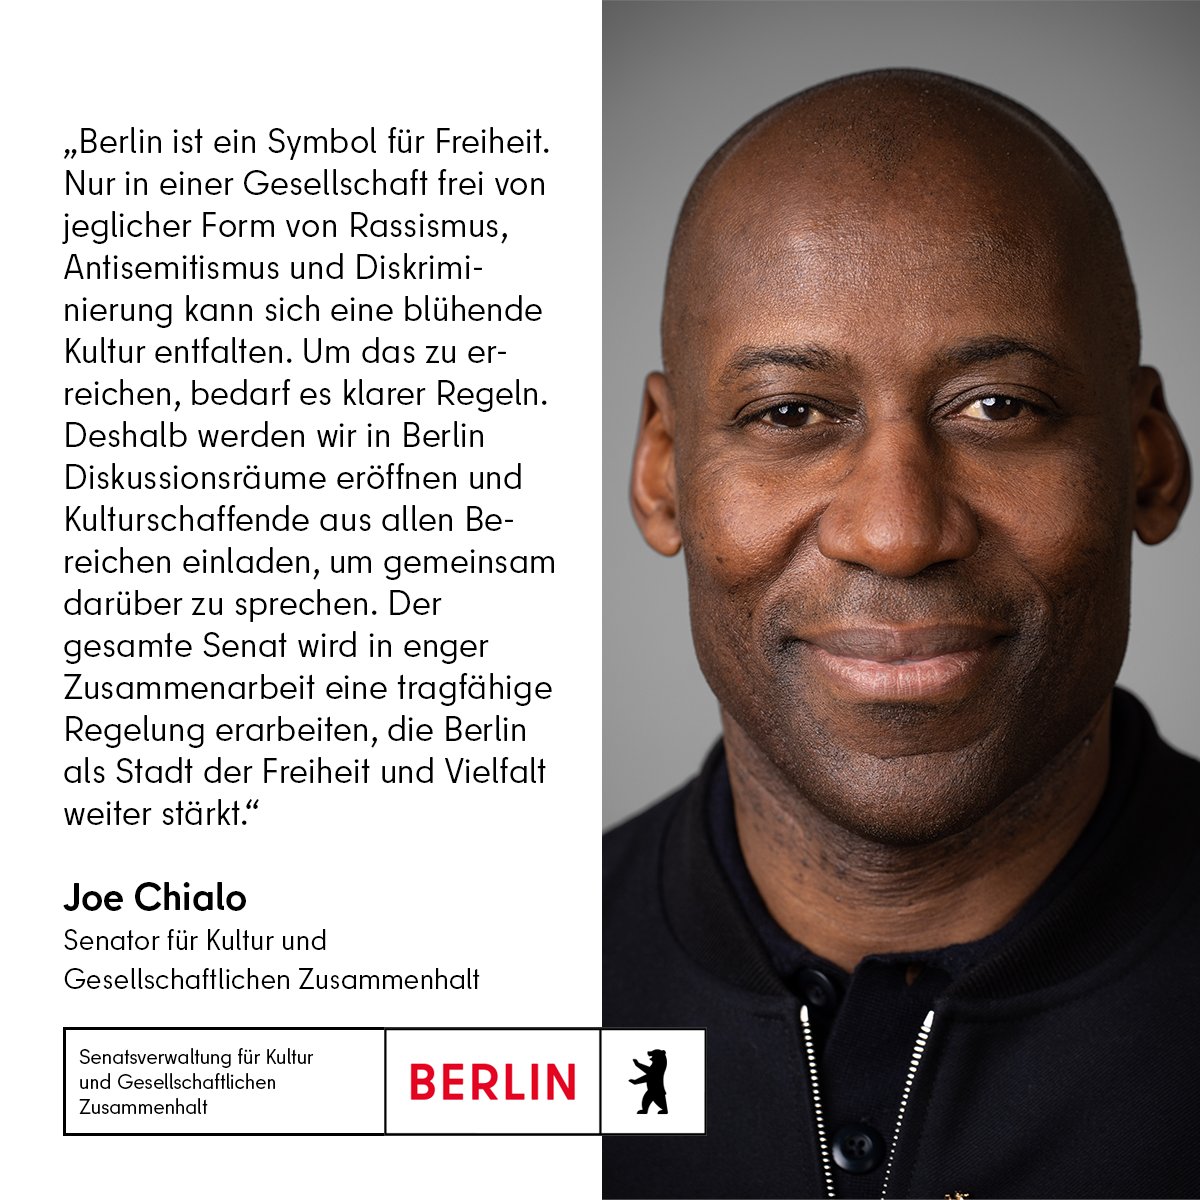 Statement unseres Senators @ChialoJoe zur Antidiskriminierungsstrategie des Landes Berlin: